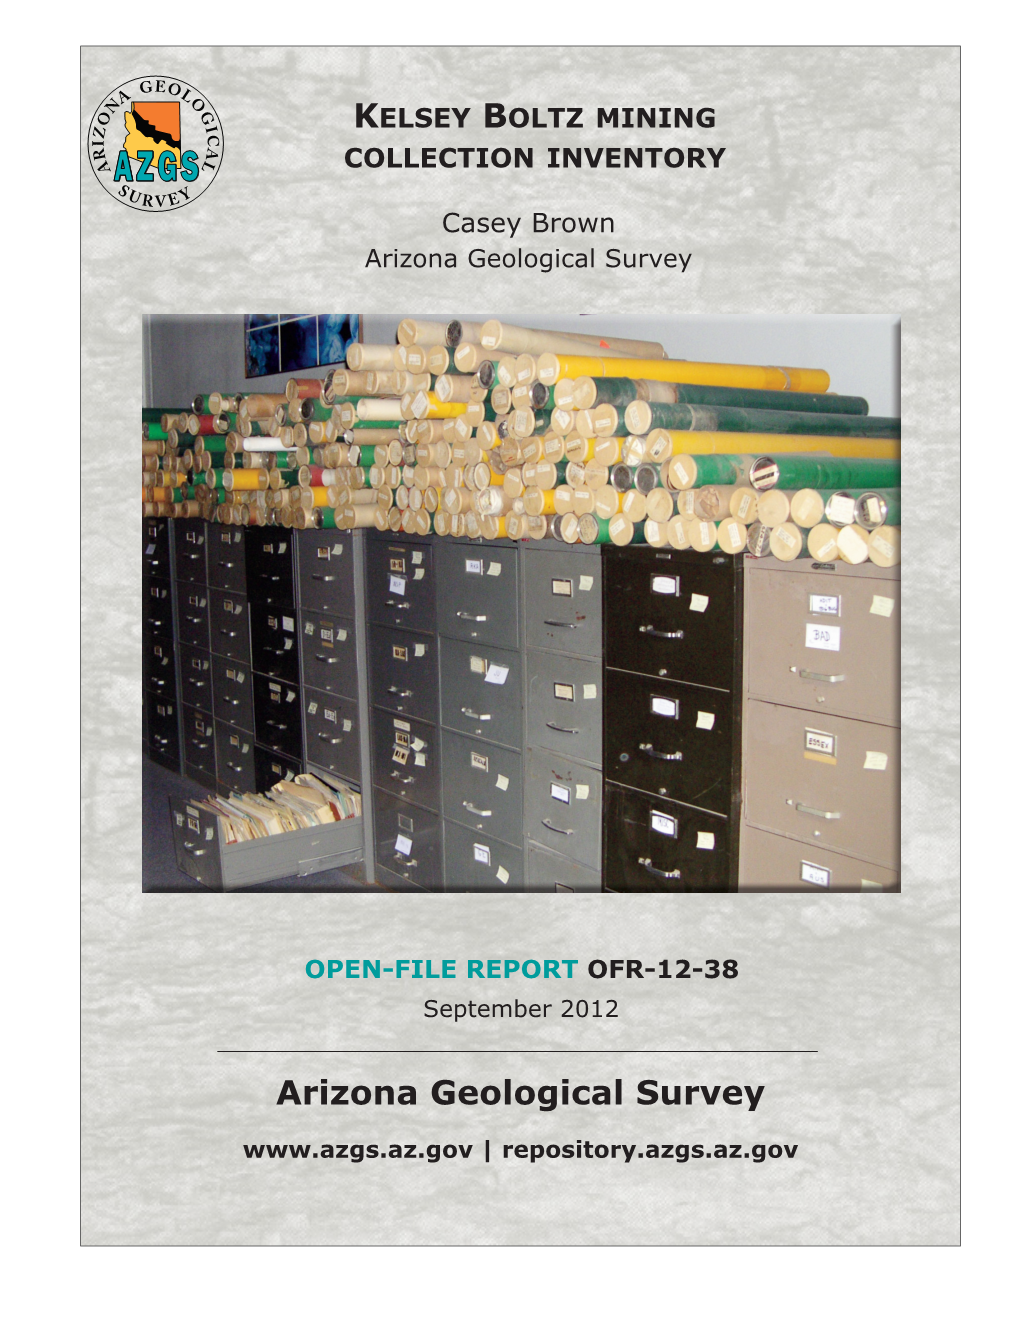 Arizona Geological Survey